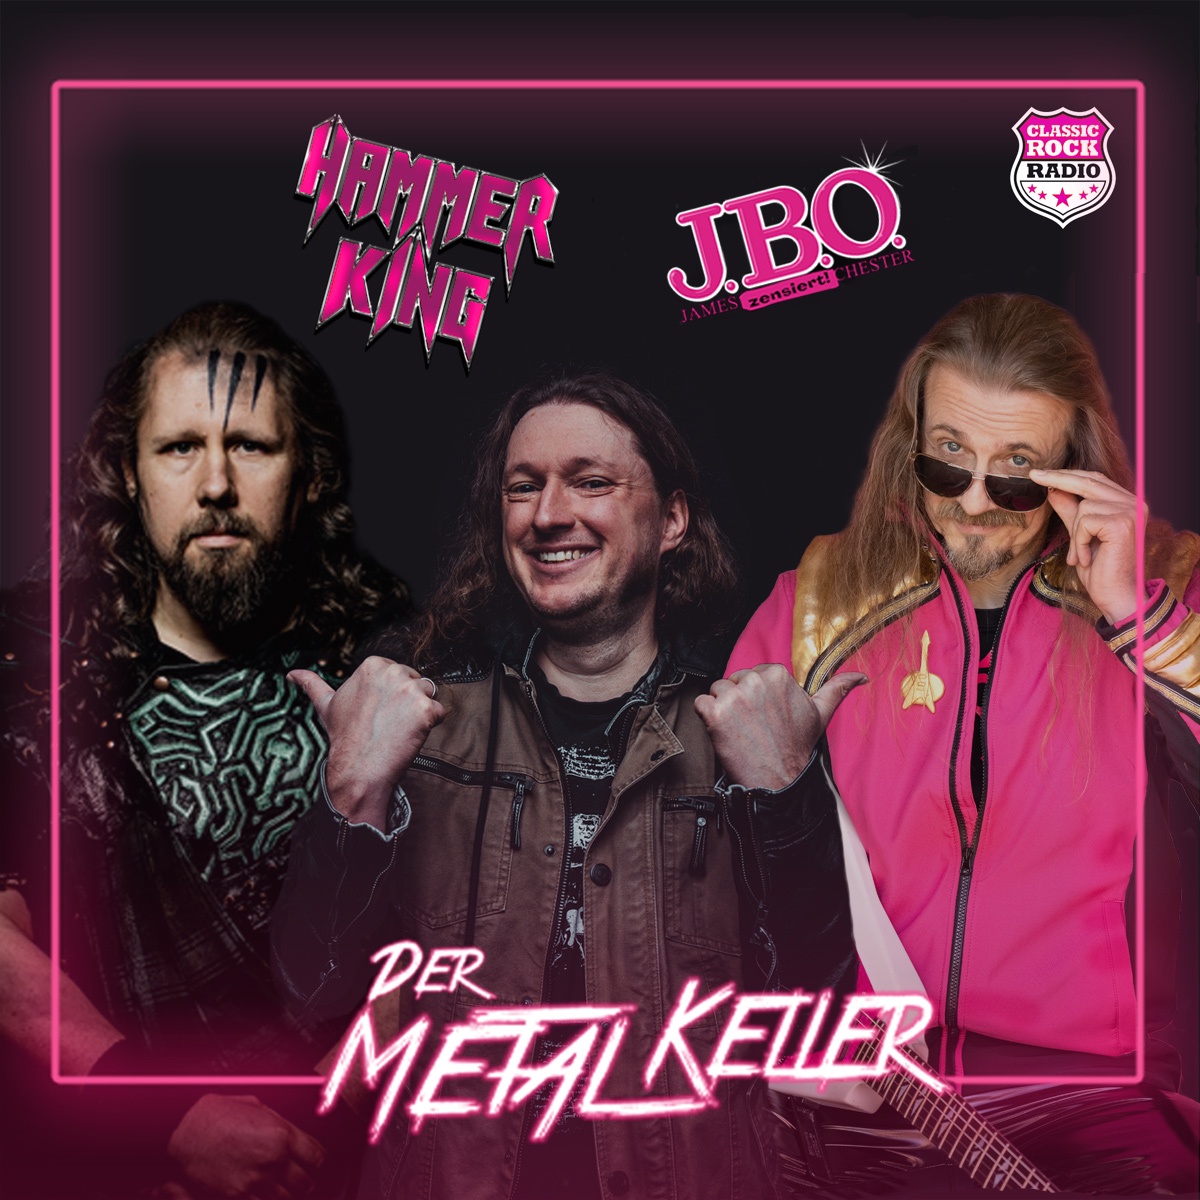 Mein kleiner Fanmoment (feat. J.B.O. und Hammer King) - Der Metalkeller - Der deutsche Metal-Podcast